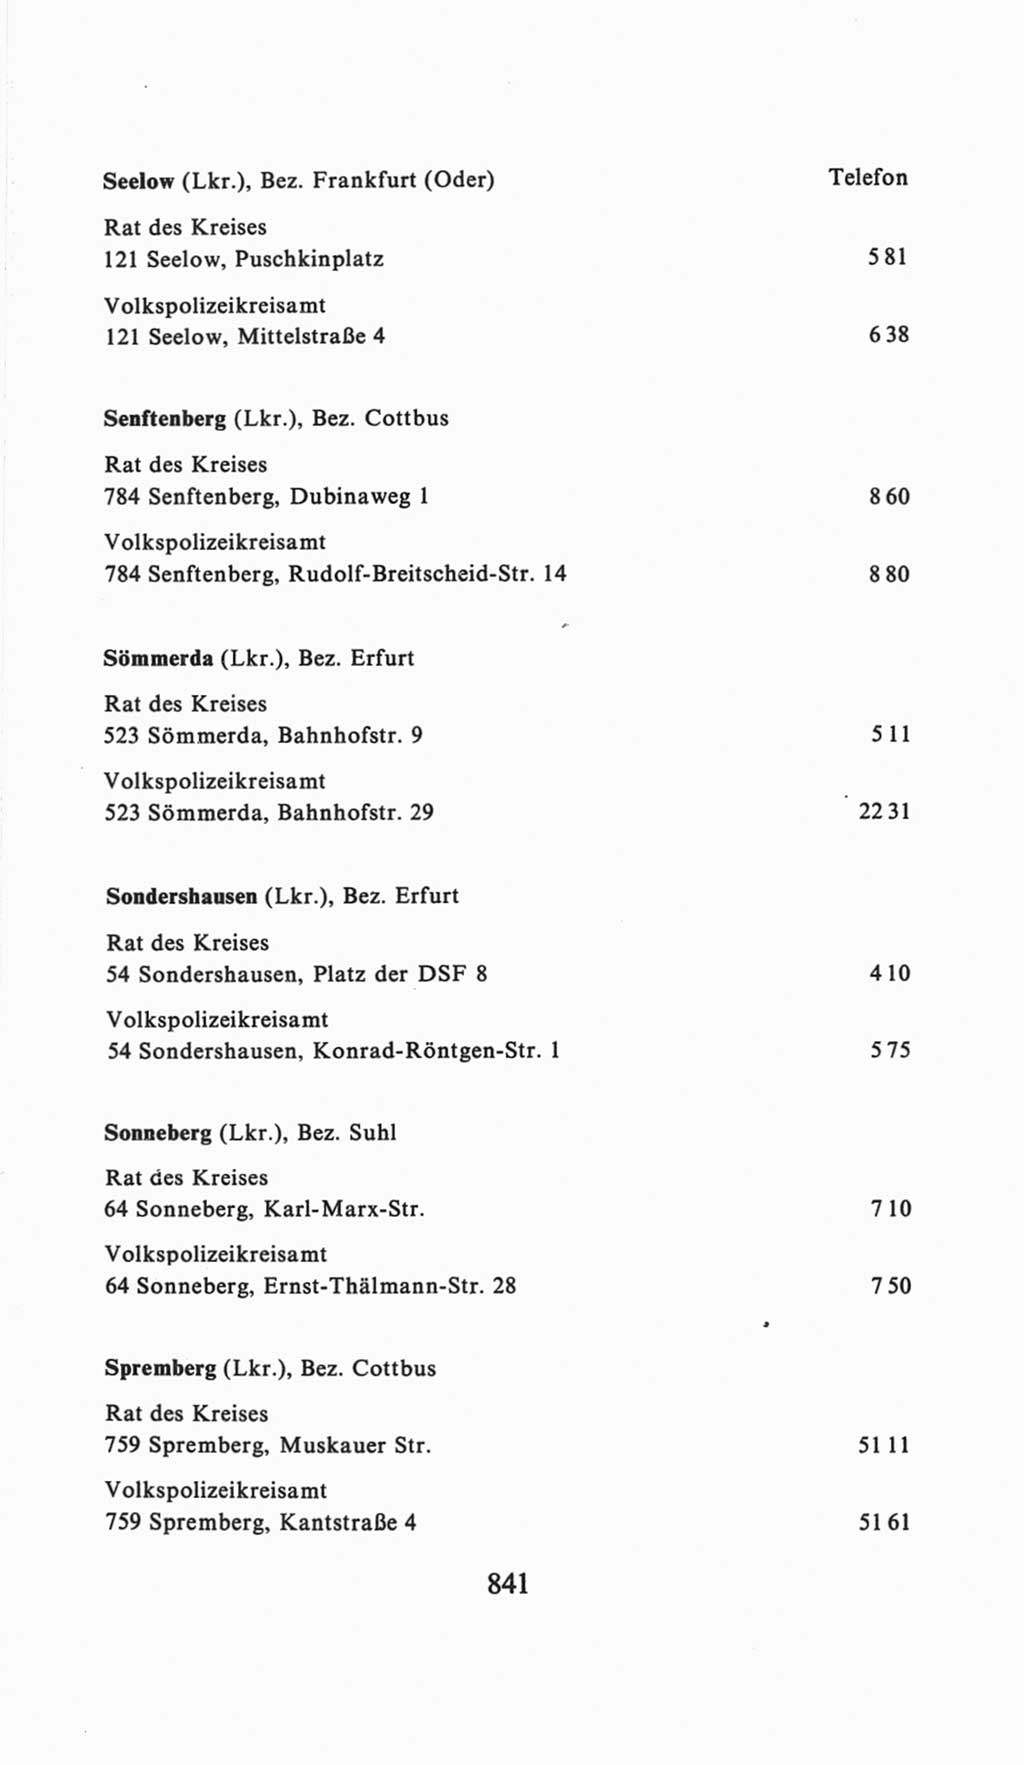 Volkskammer (VK) der Deutschen Demokratischen Republik (DDR), 6. Wahlperiode 1971-1976, Seite 841 (VK. DDR 6. WP. 1971-1976, S. 841)